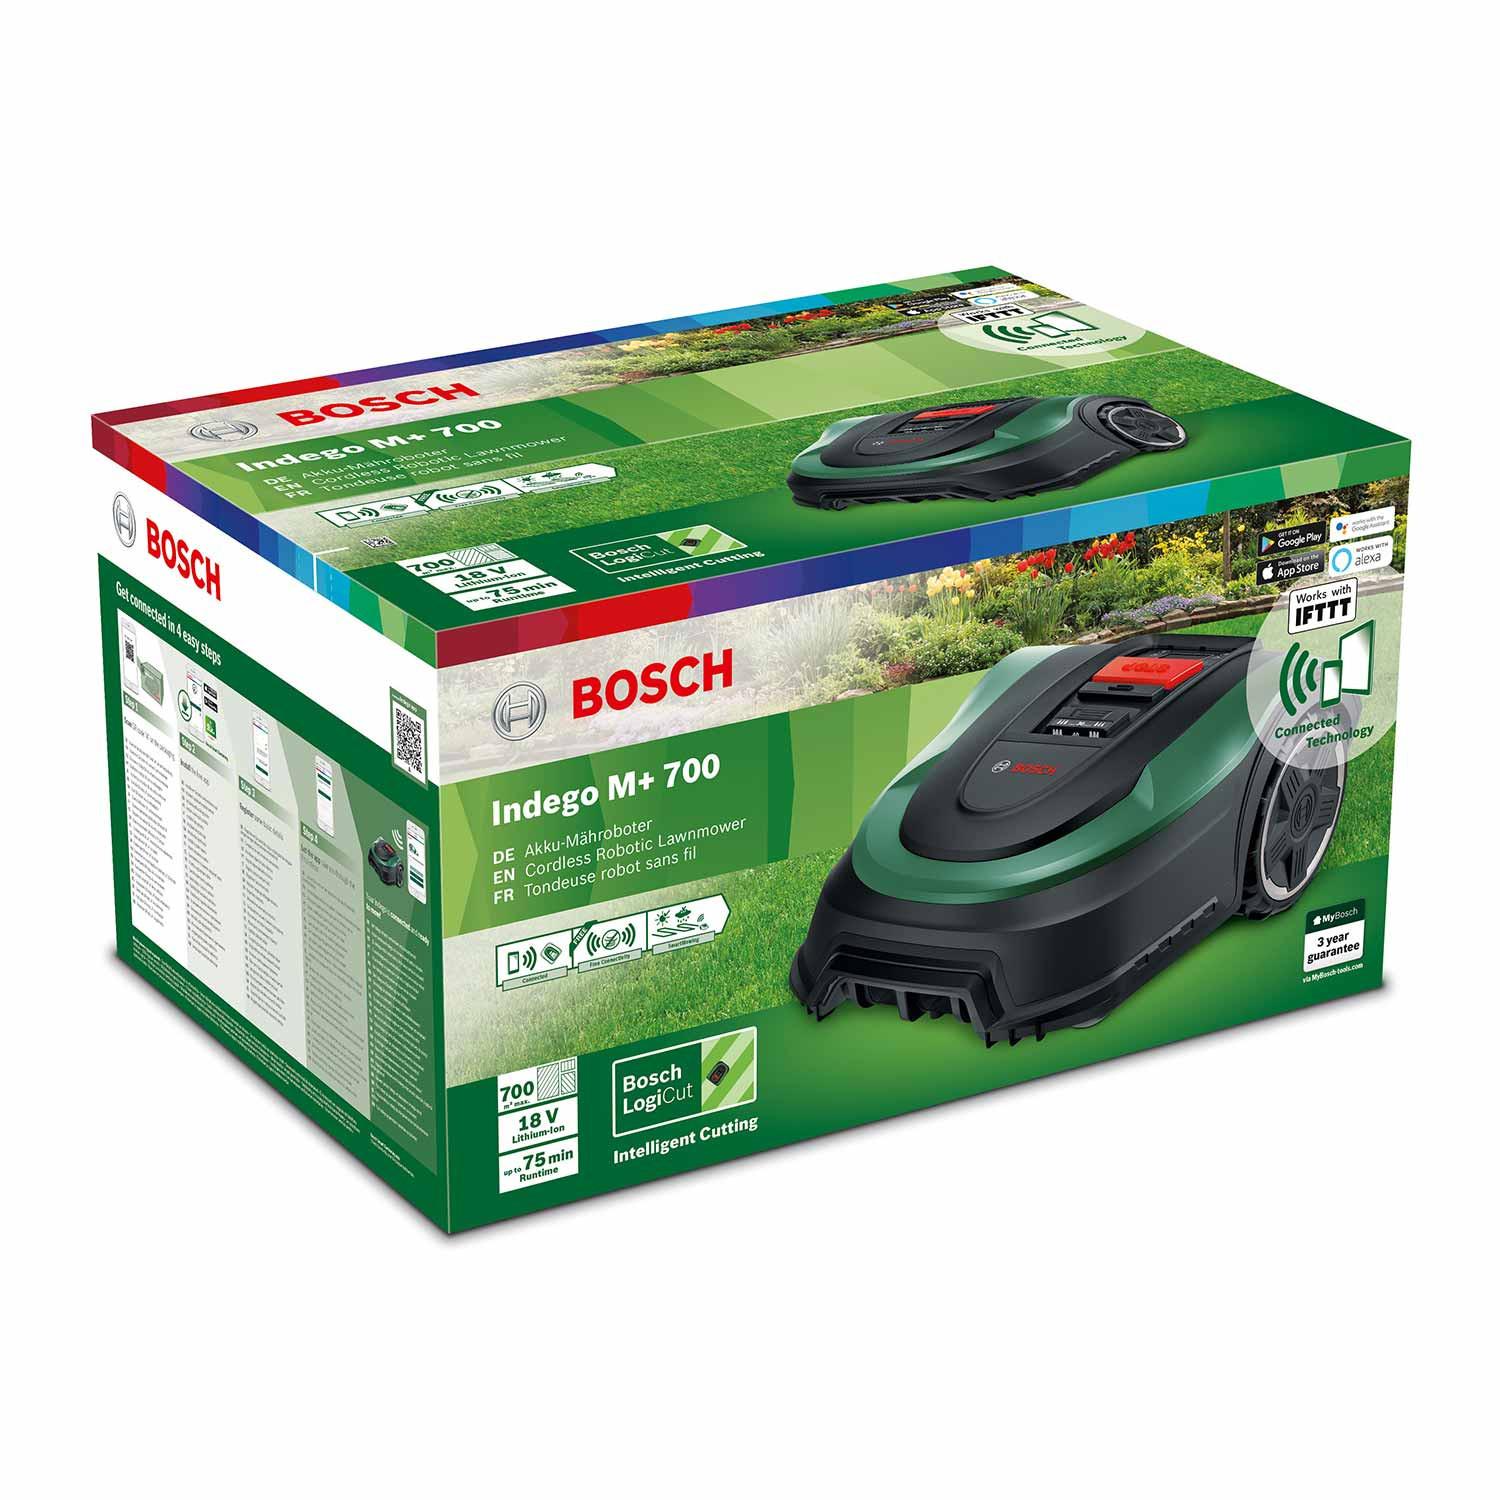 Bosch Indego M+ 700 - Mähroboter + Garage - Verpackung